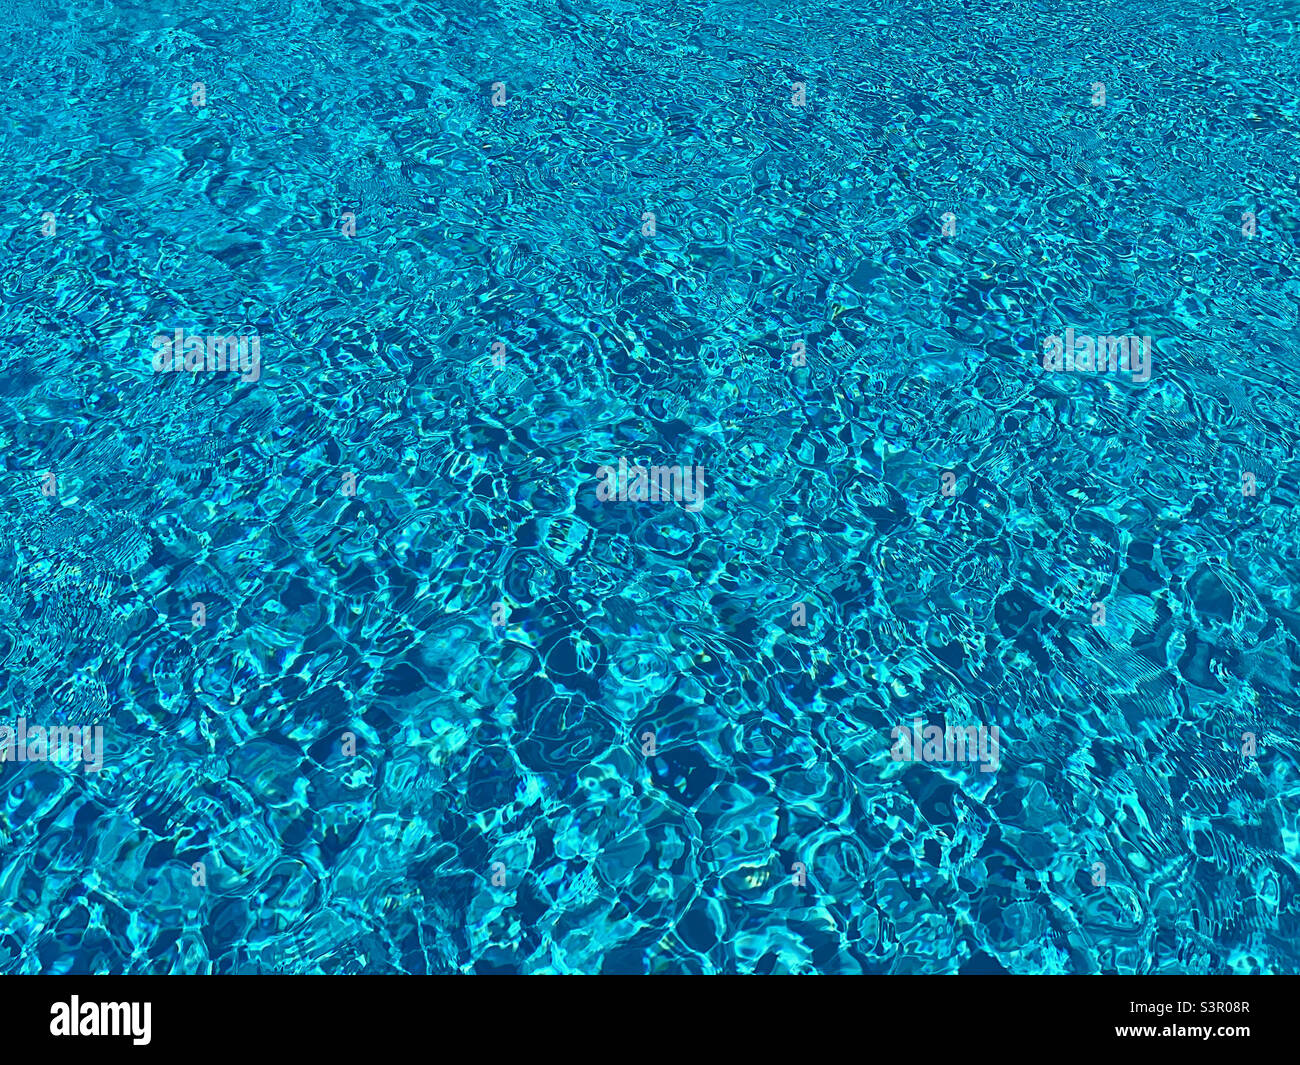 Das glitzernde Wasser eines Swimmingpools. Die Szene von Glück, Entspannung und das Gefühl, im Urlaub zu sein. Ein mögliches Bild für einen Hintergrund? Foto ©️ COLIN HOSKINS. Stockfoto